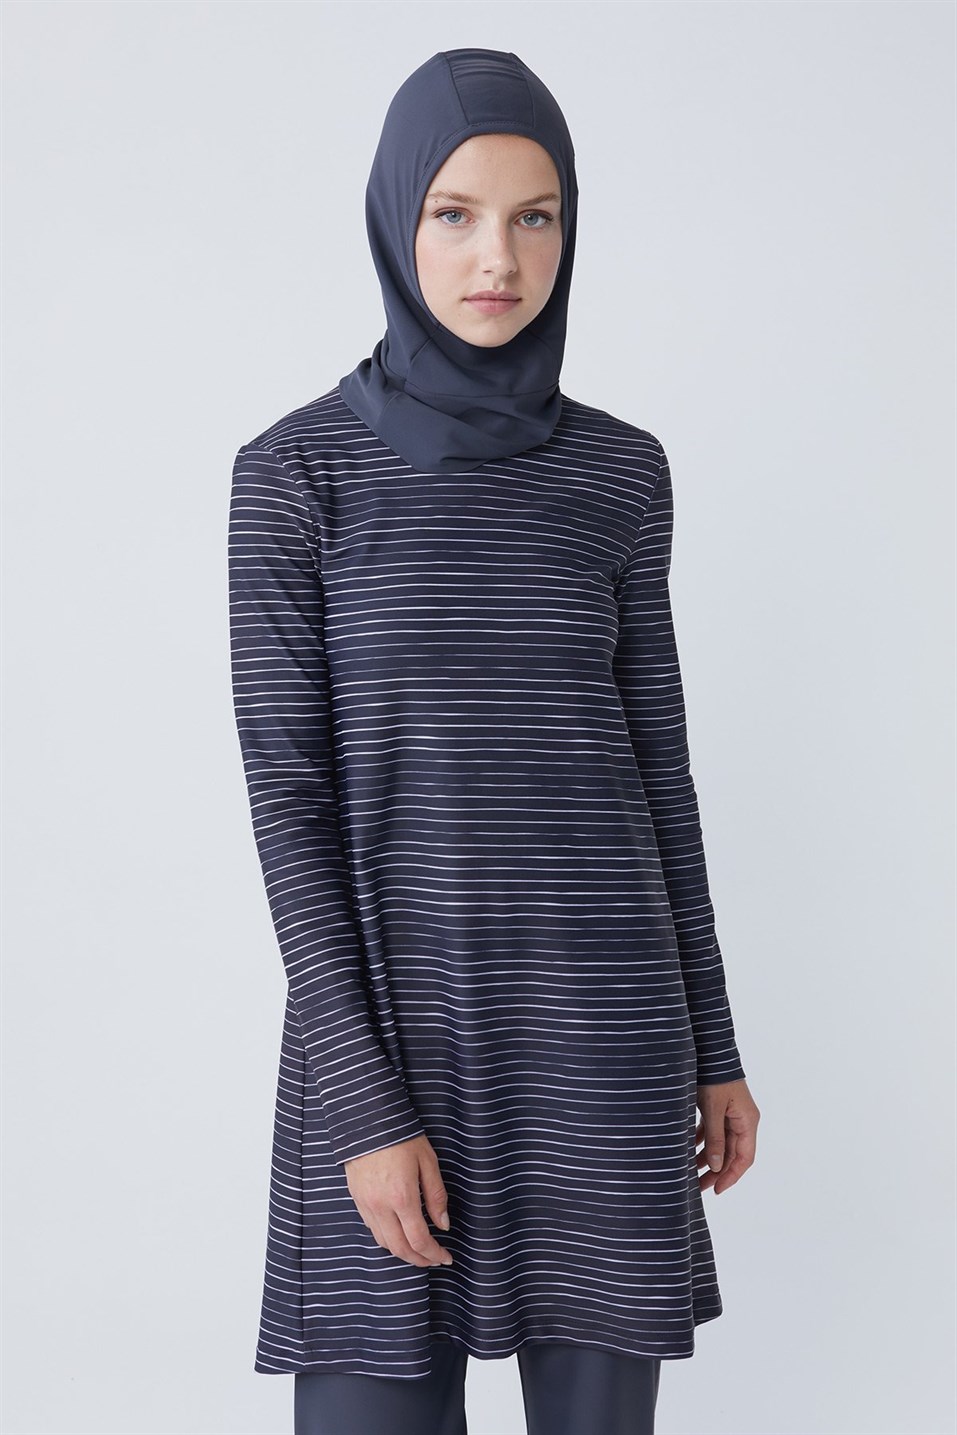 White Striped Basic Elastane Hijab Swimsuit Tunic